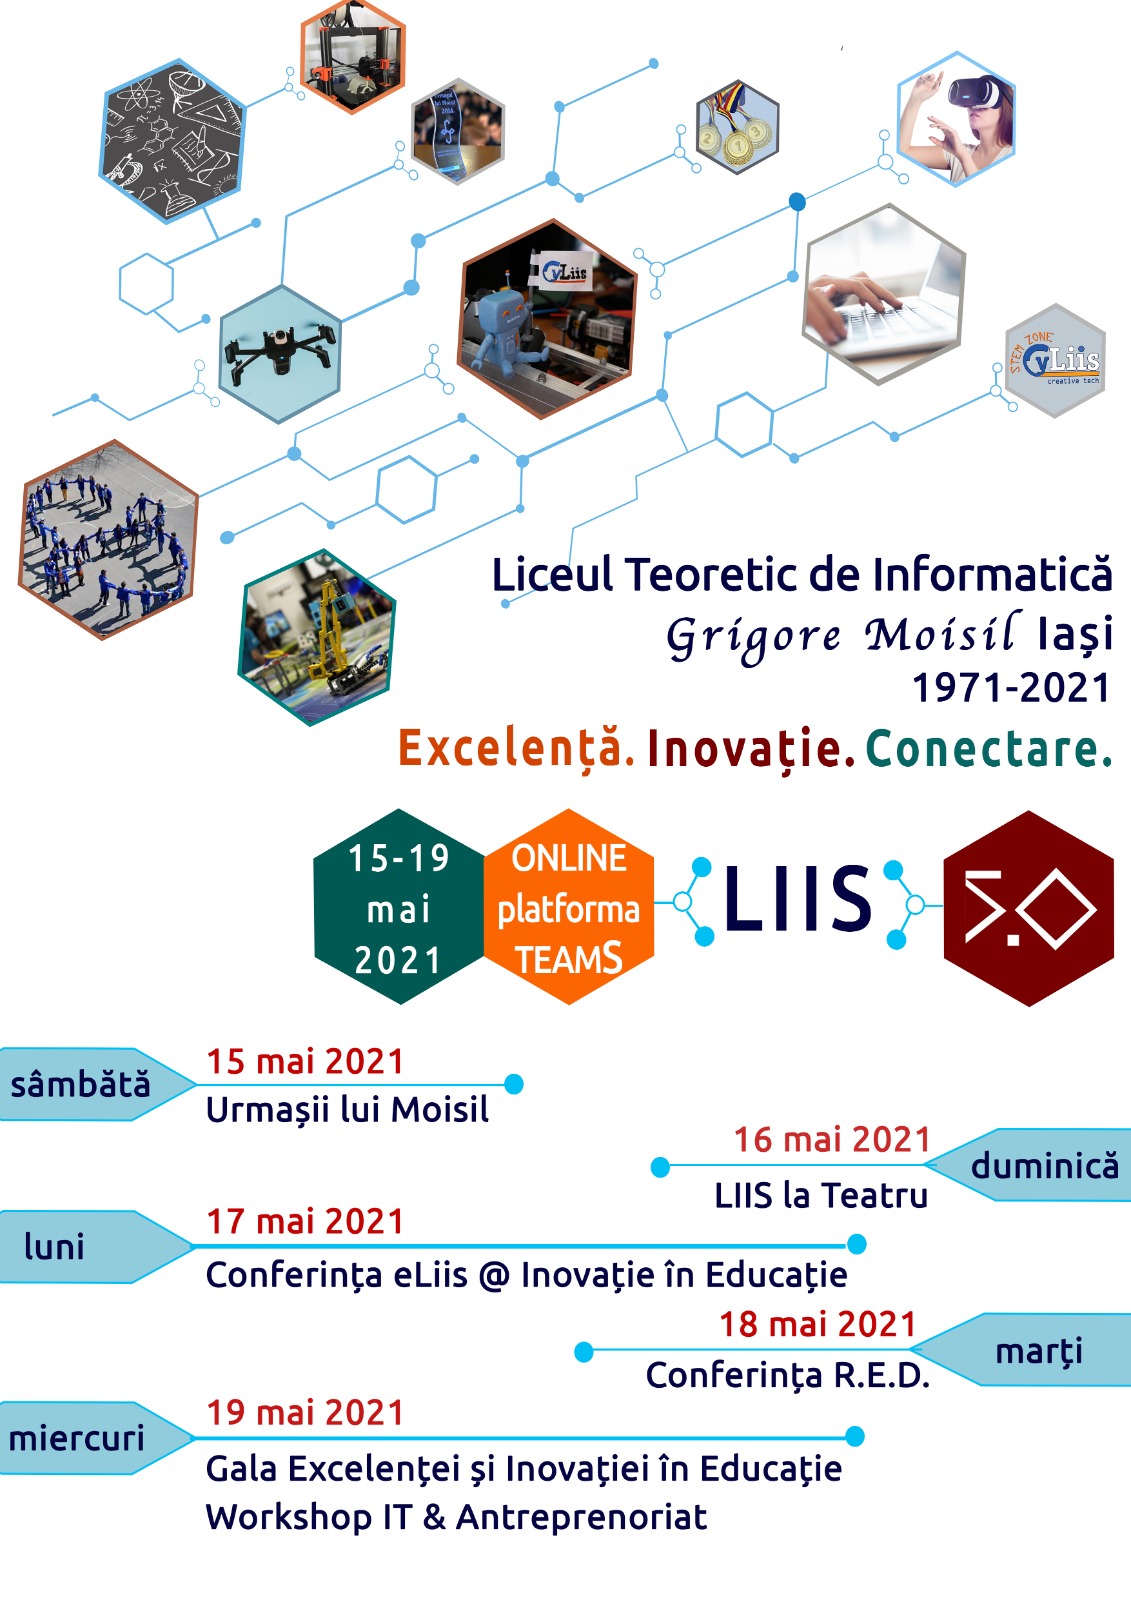 Conferința R.E.D – Rezultate ale parteneriatelor Liceului Teoretic de Informatică „Grigore Moisil” Iași